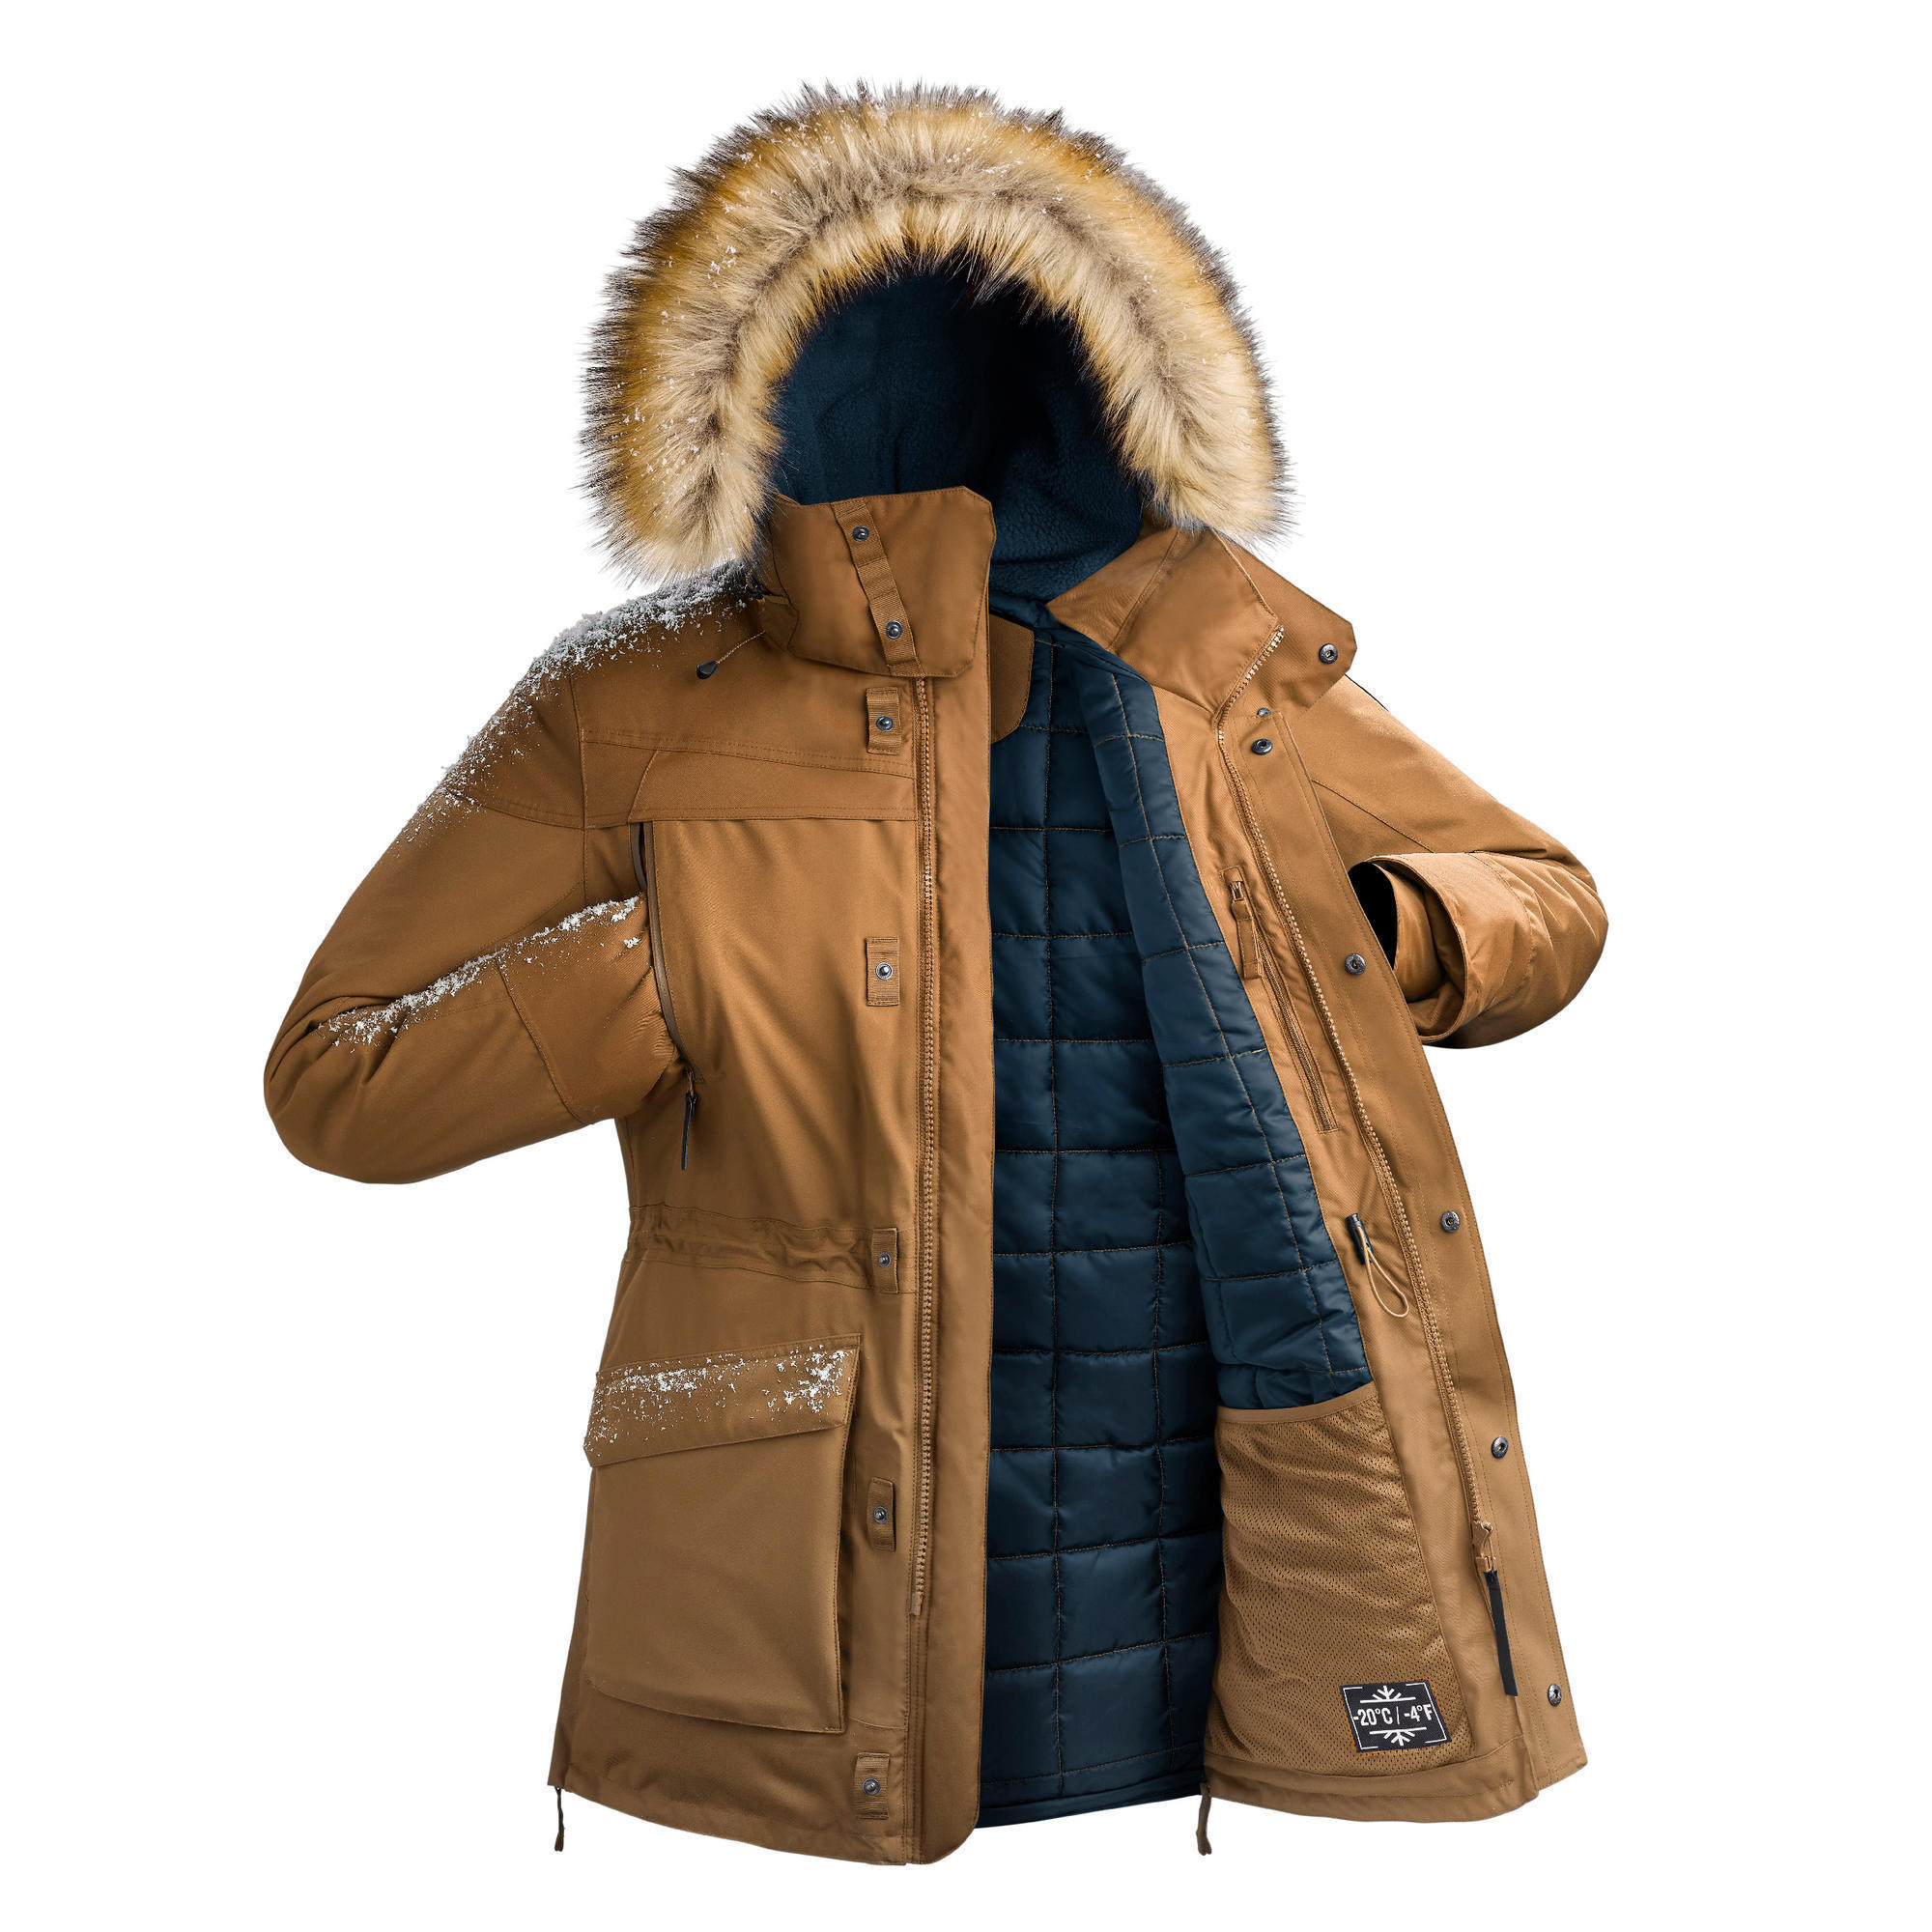 quechua sh500 jacket